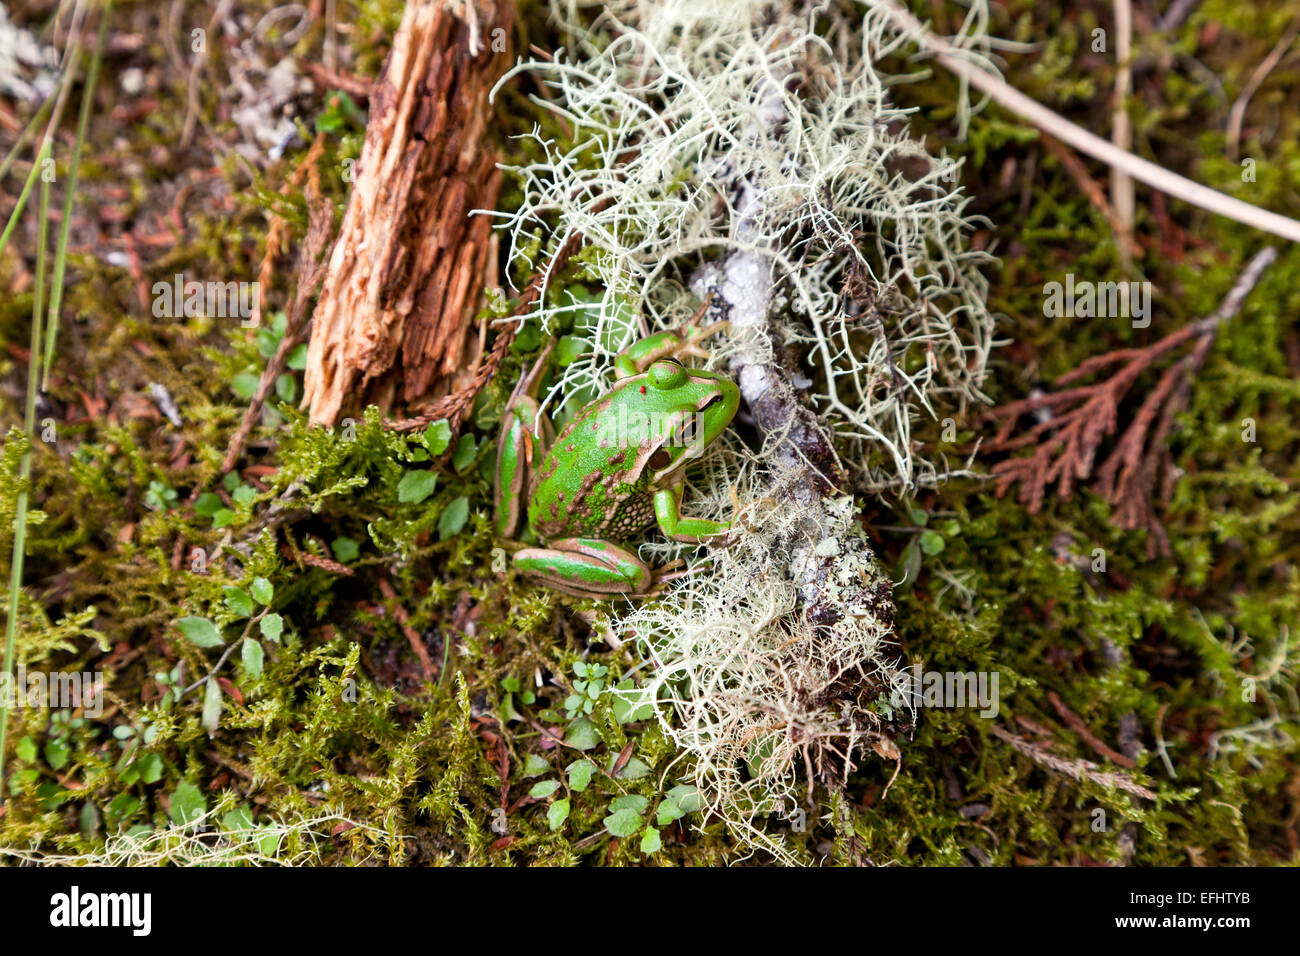 Gracchia rana erba sul suolo della foresta accanto al bianco licheni, muschi, Whirinaki Forest, Isola del nord, Nuova Zelanda Foto Stock